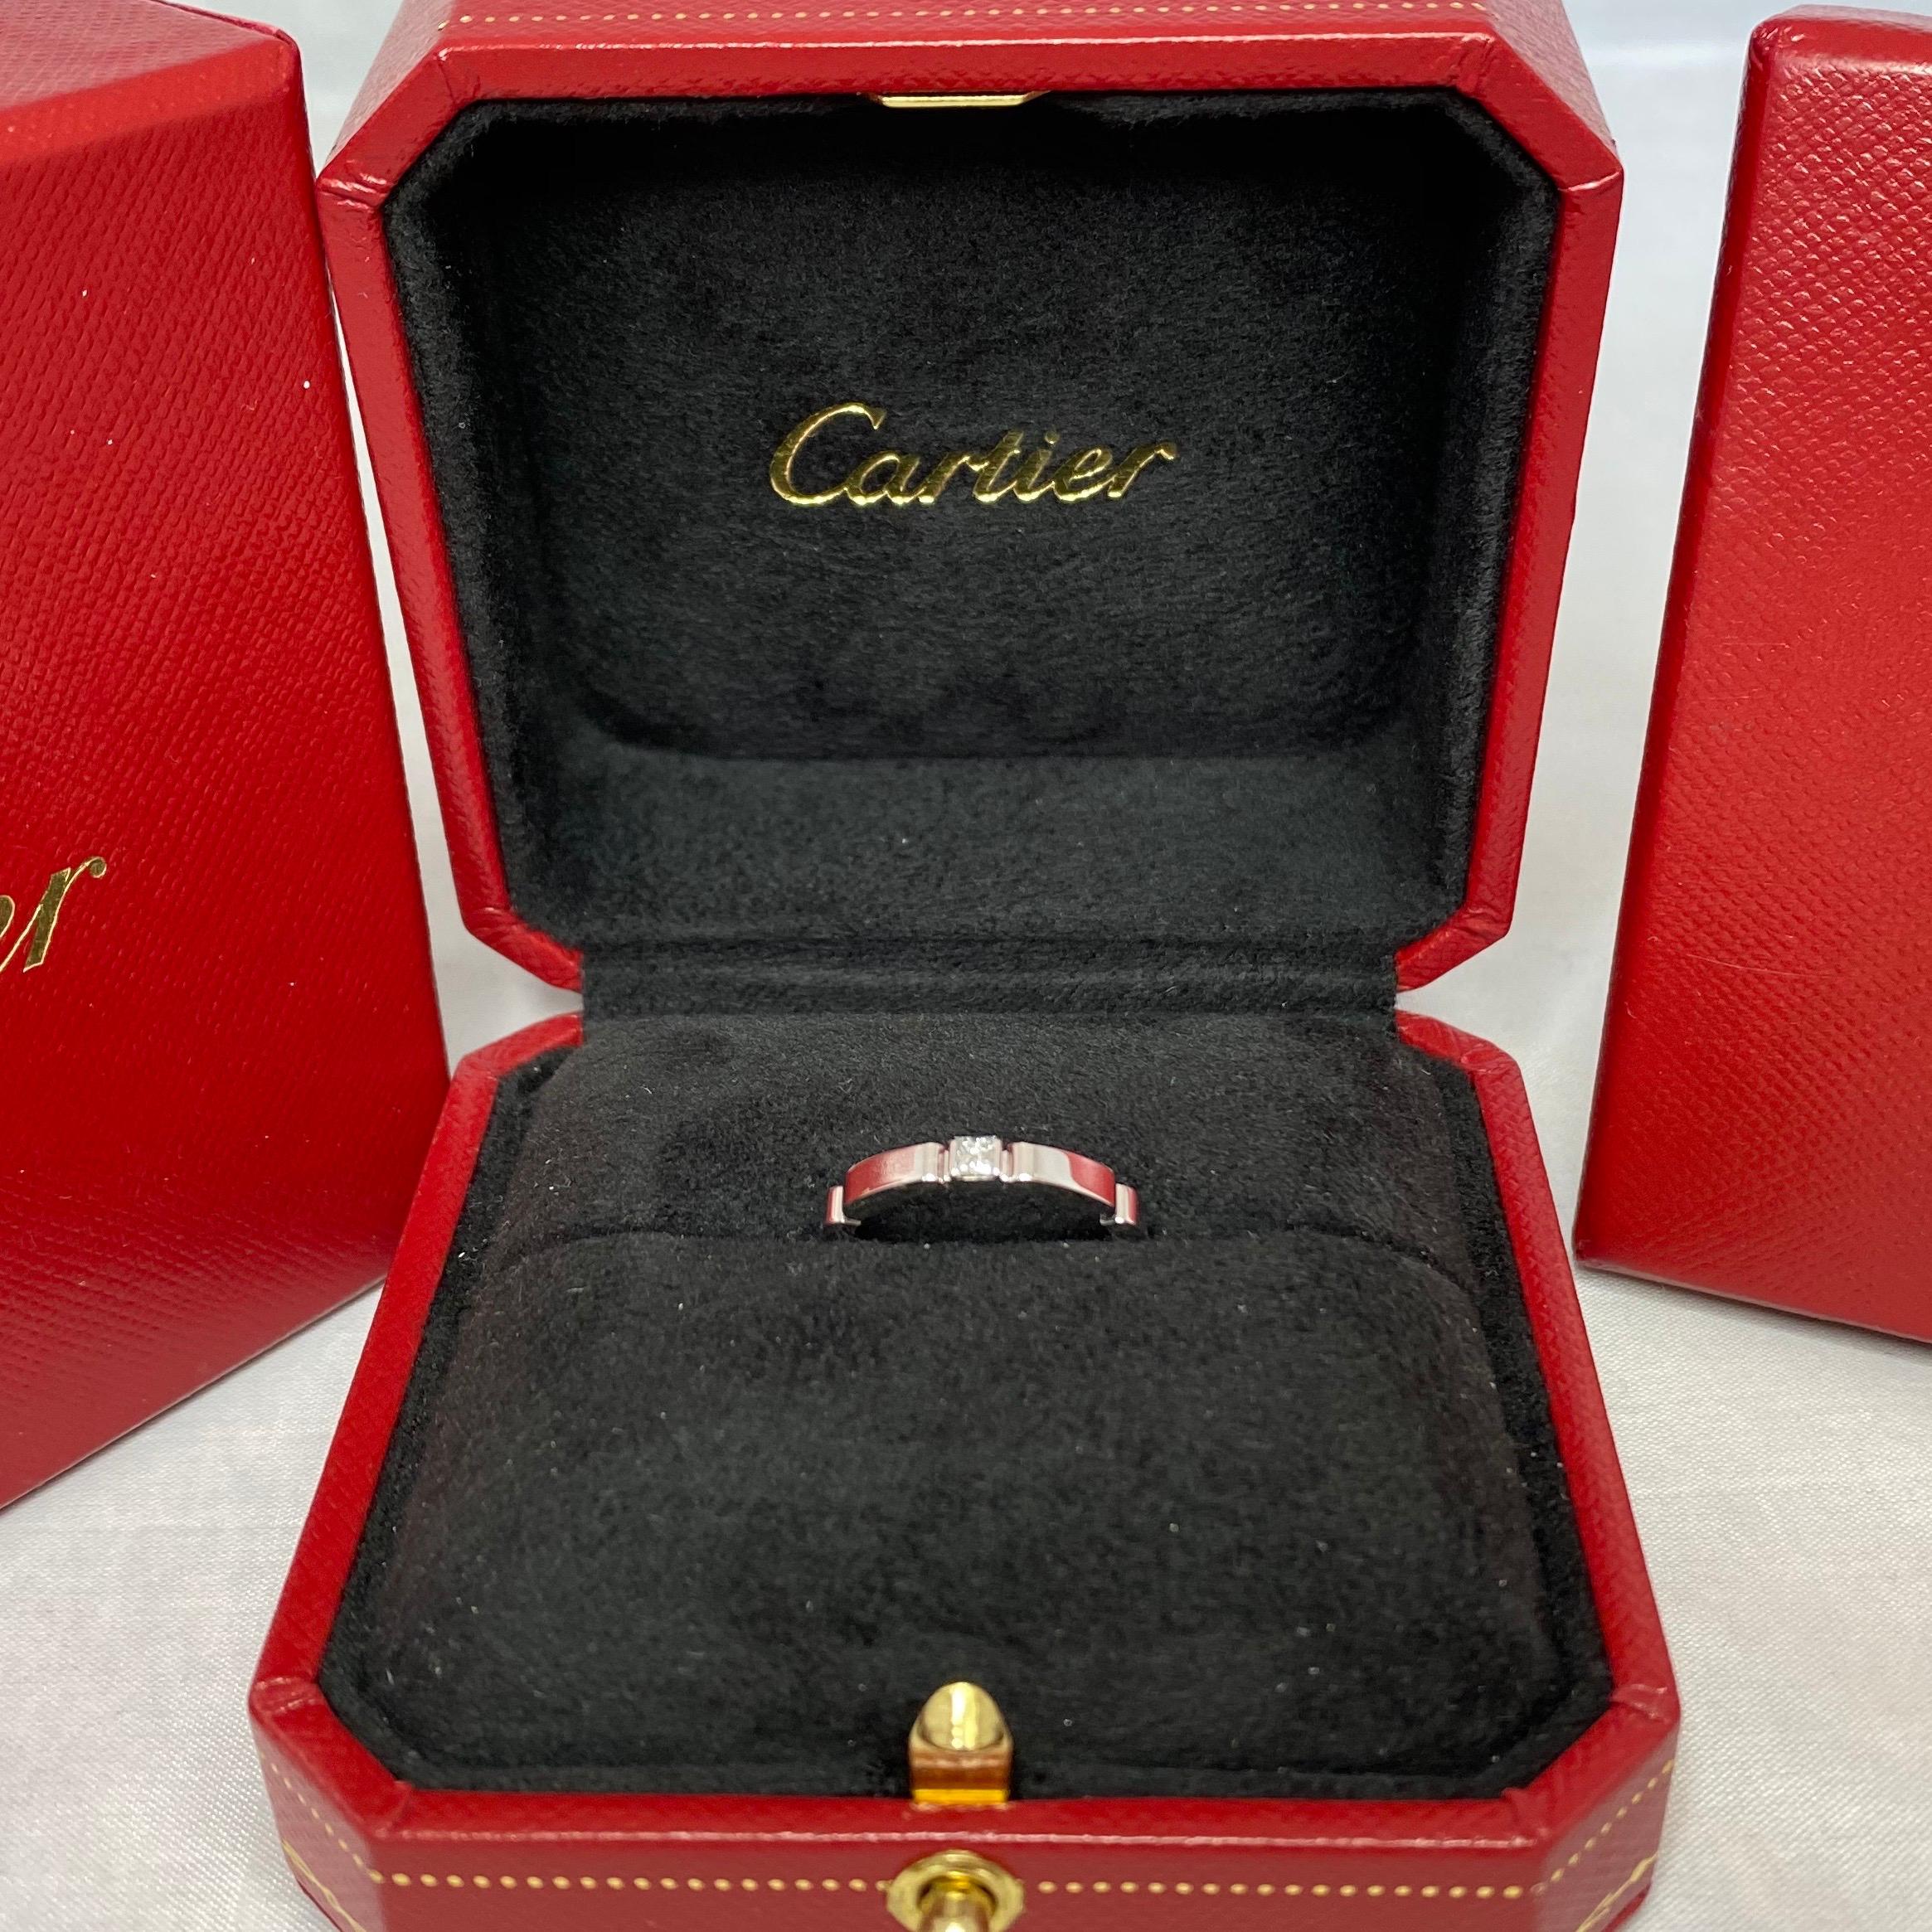 Cartier Maillon Panthere18k Weißgold Prinzessinnenschliff Diamant Band Ring in Cartier Box.

Schöner Bandring aus Weißgold mit einem 2,5 mm großen Diamanten im Prinzessinnenschliff. Der Diamant misst 2,5 mm (ca. 0,10 ct). Edle Schmuckhäuser wie